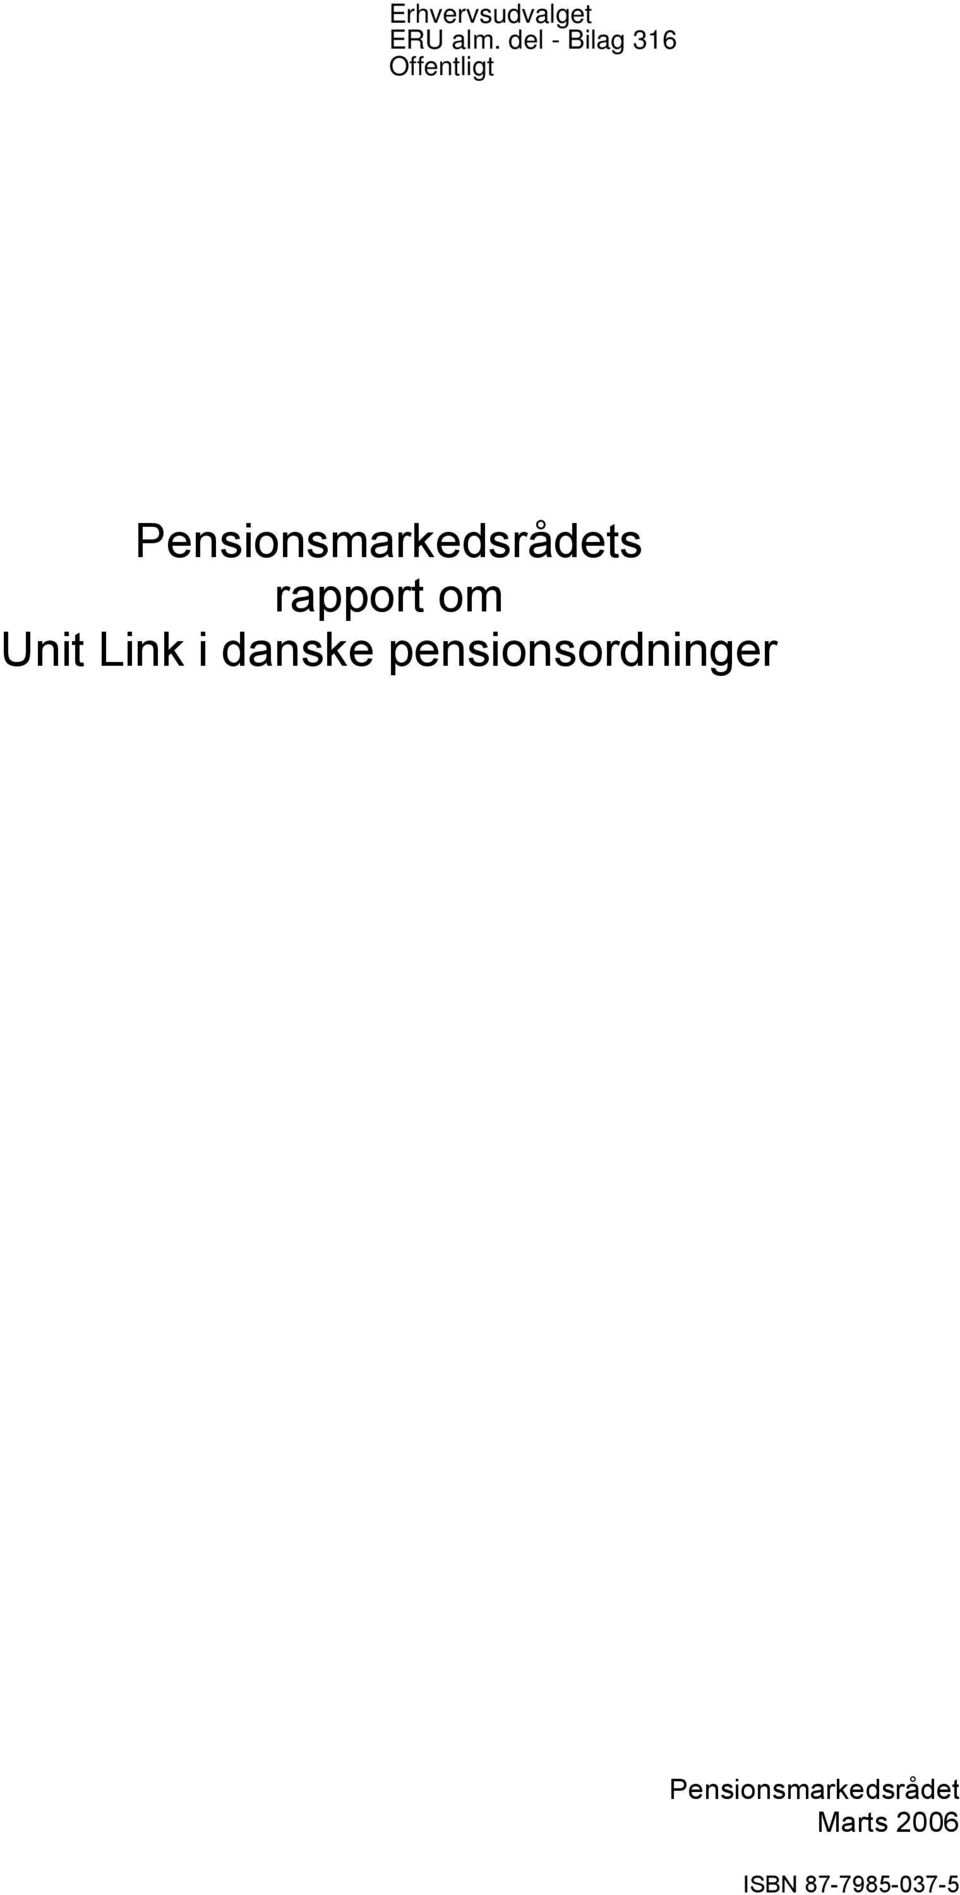 Pensionsmarkedsrådets rapport om Unit Link